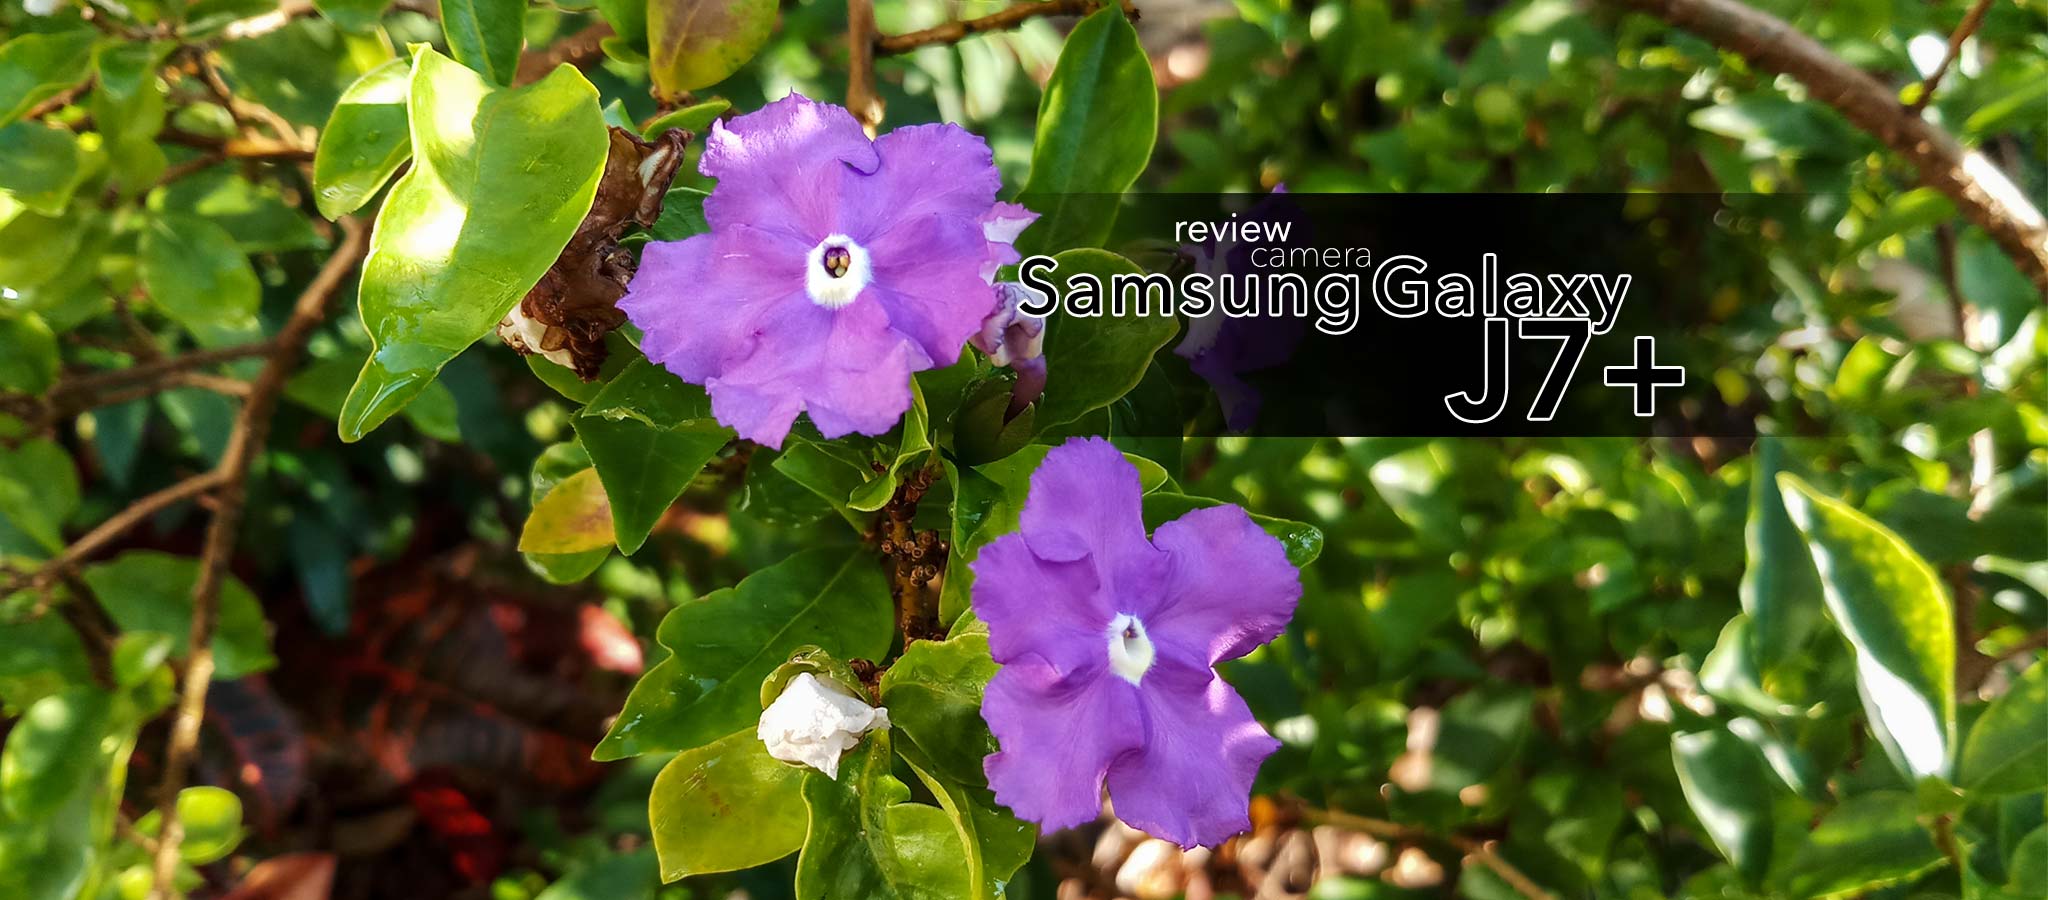 Review camera Samsung Galaxy J7+: chất lượng ảnh, chi tiết và màu sắc khá [HOT]